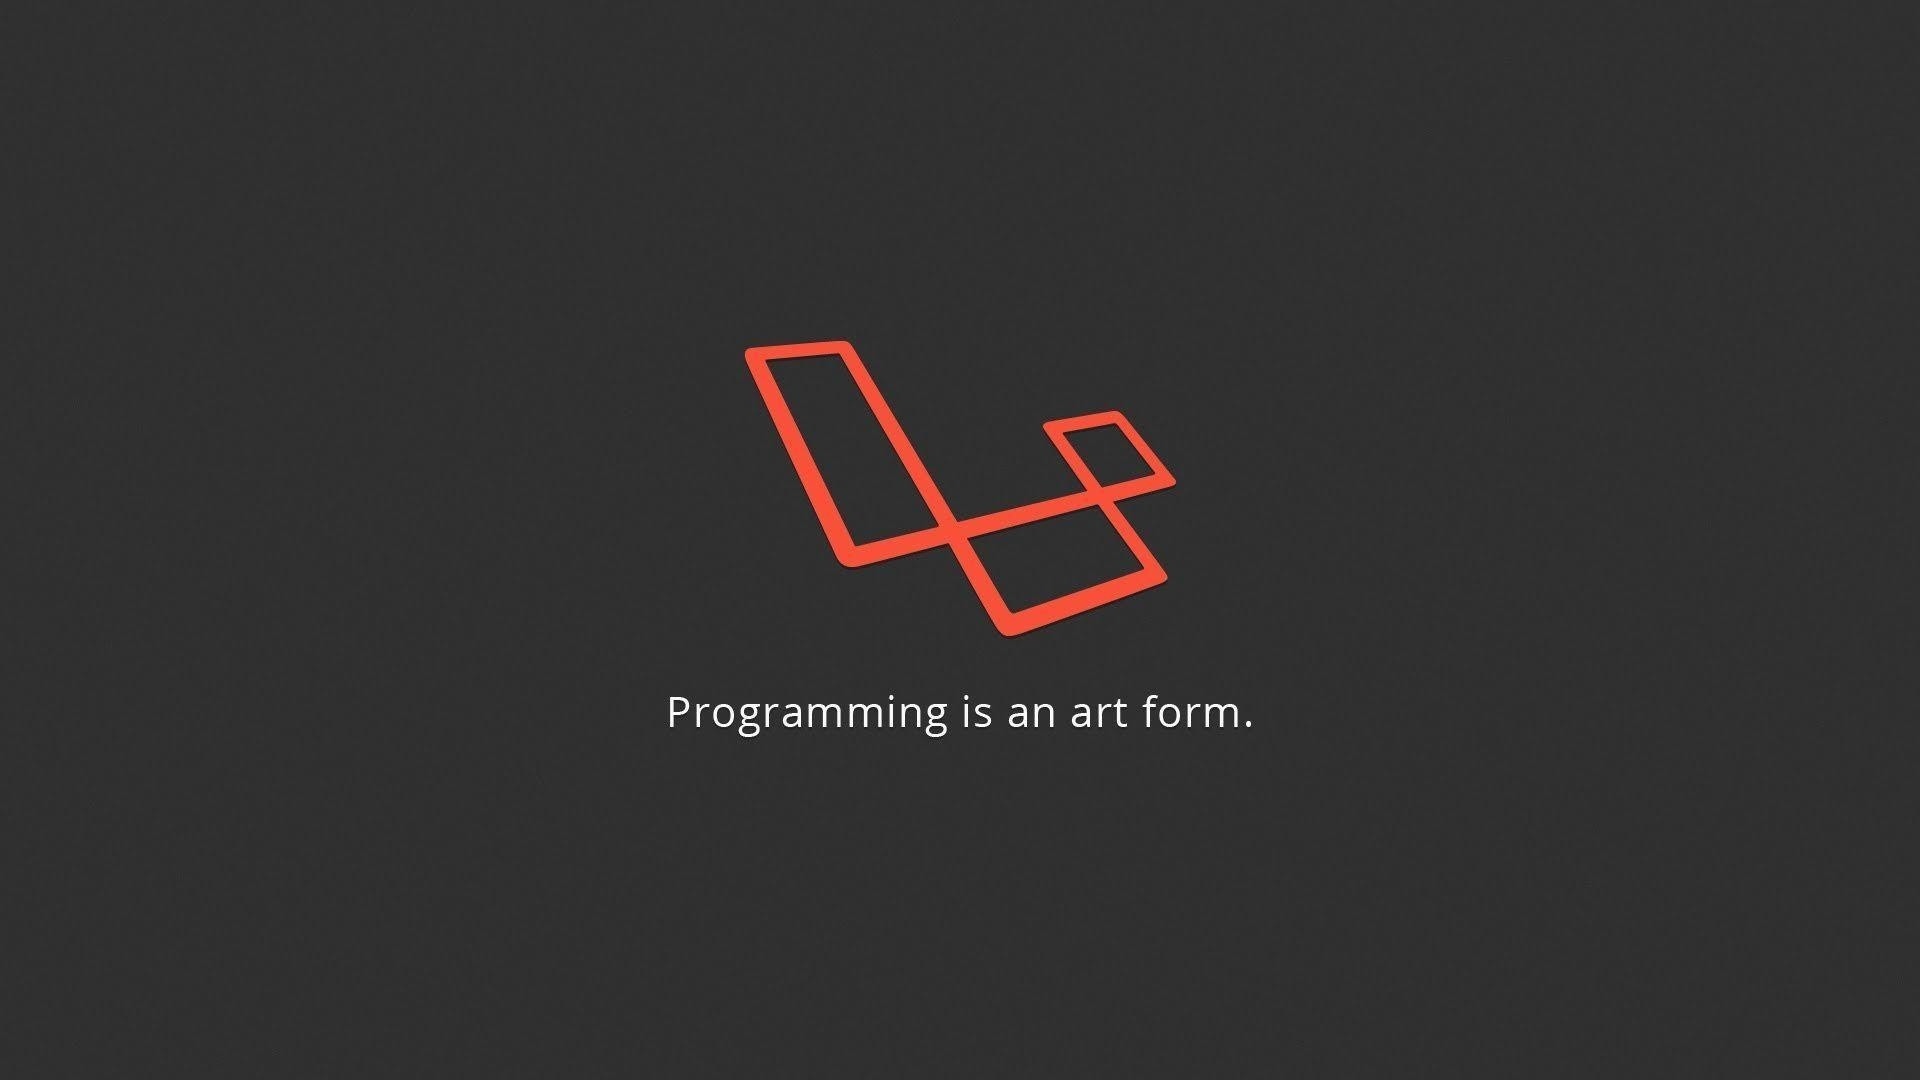 Programming Minimalist Download Wallpaper